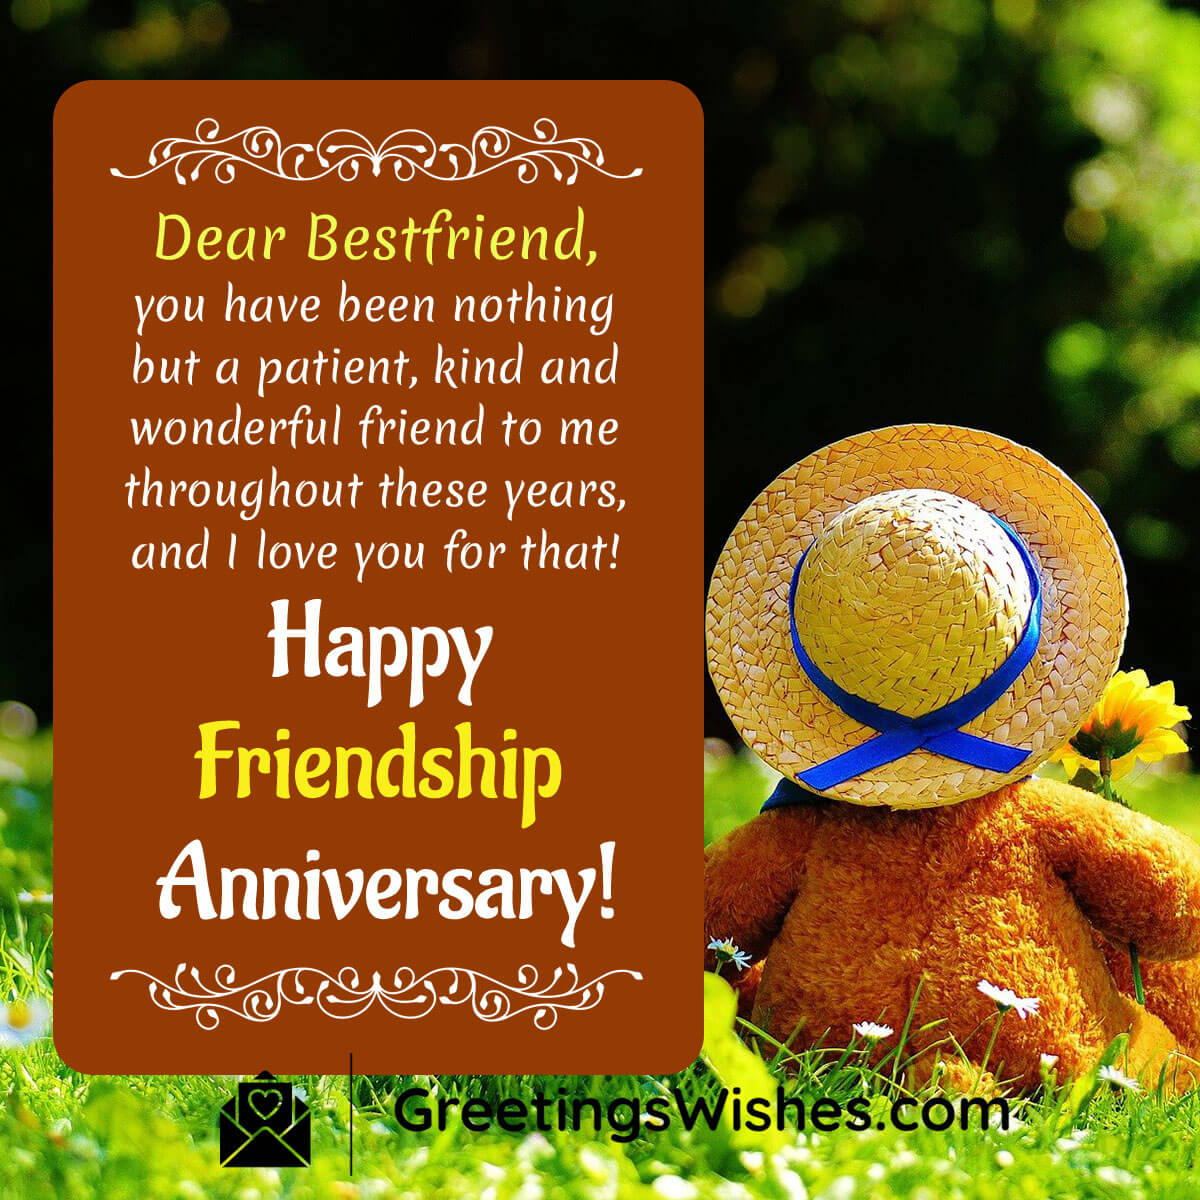 Bestfriend Friendship Anniversary